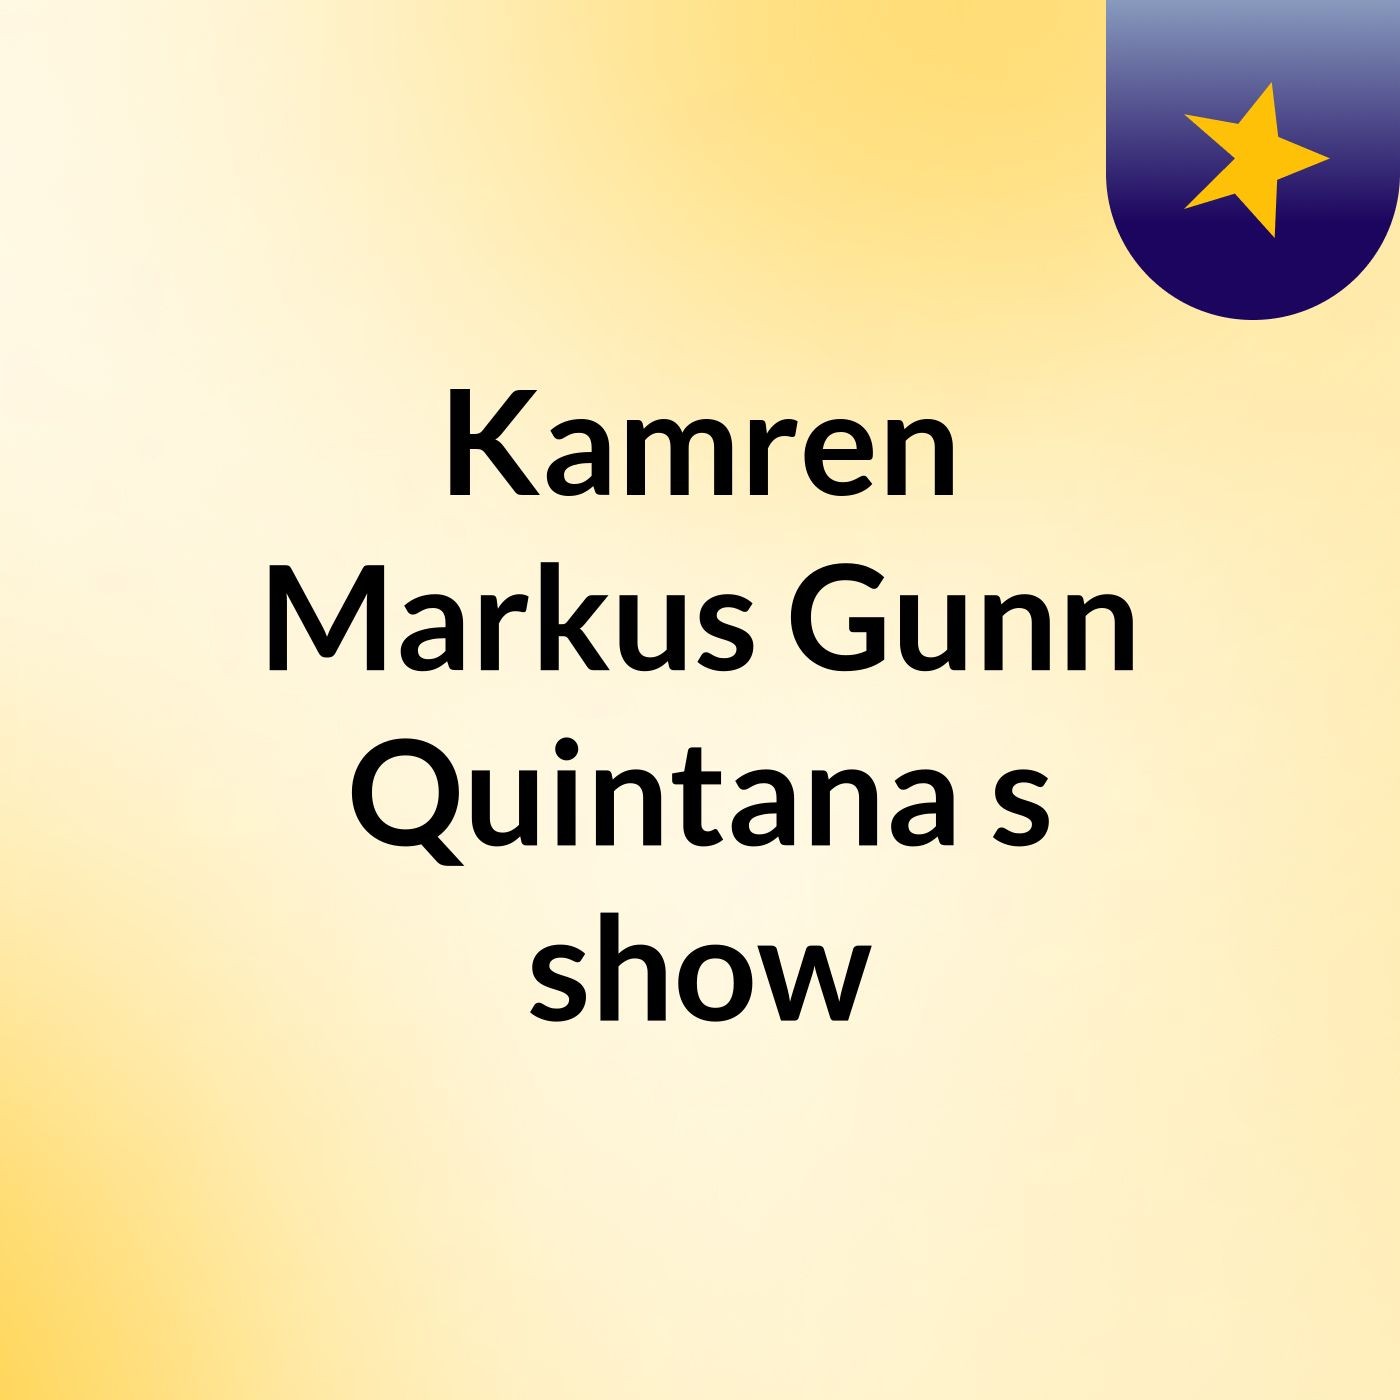 Kamren Markus Gunn Quintana's show